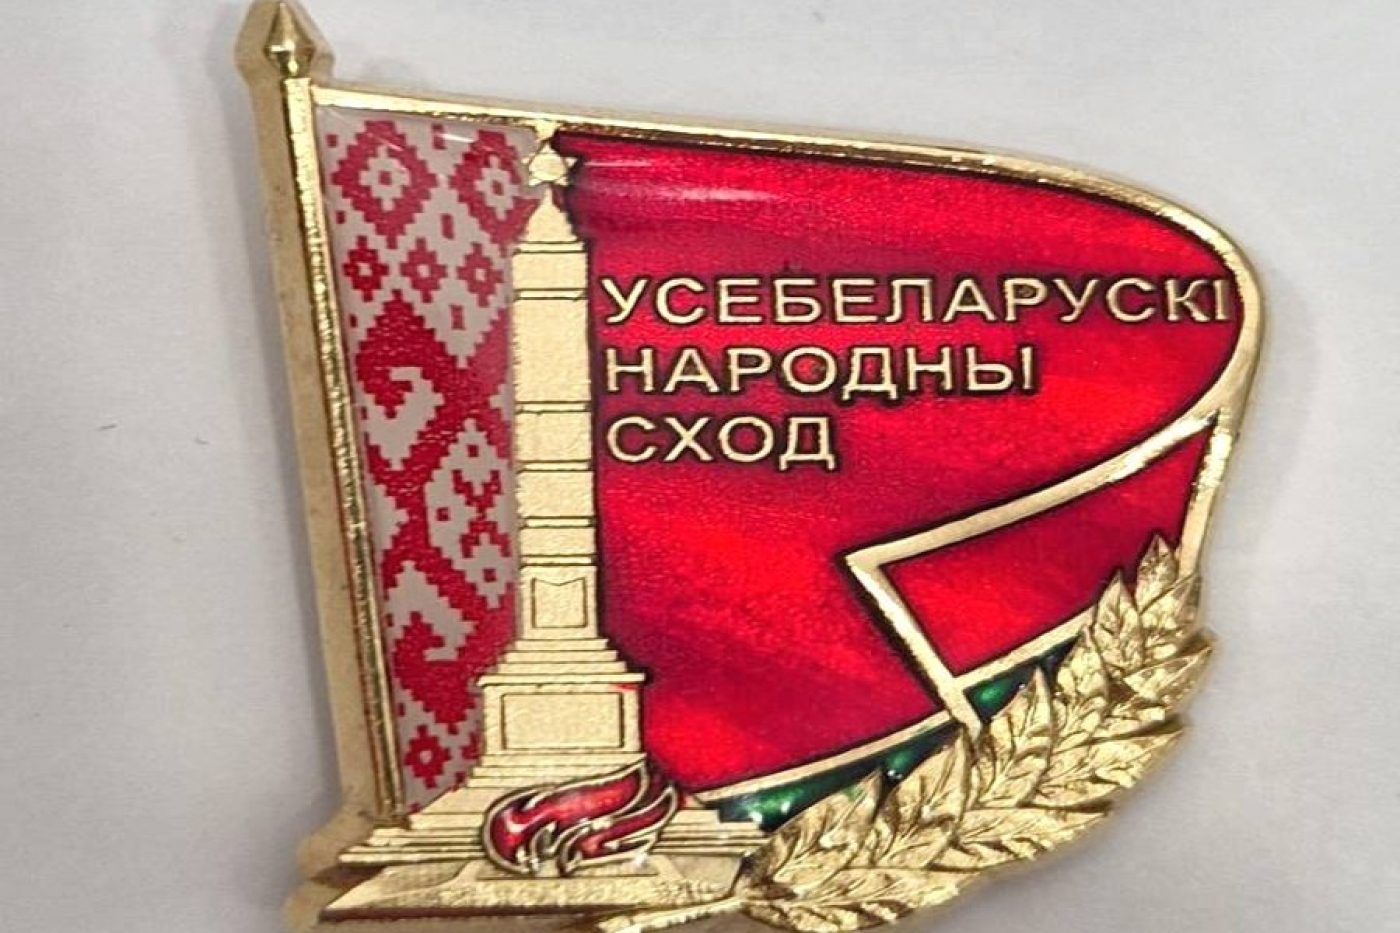 Президент Беларуси Александр Лукашенко учредил нагрудный знак делегата Всебелорусского народного собрания.